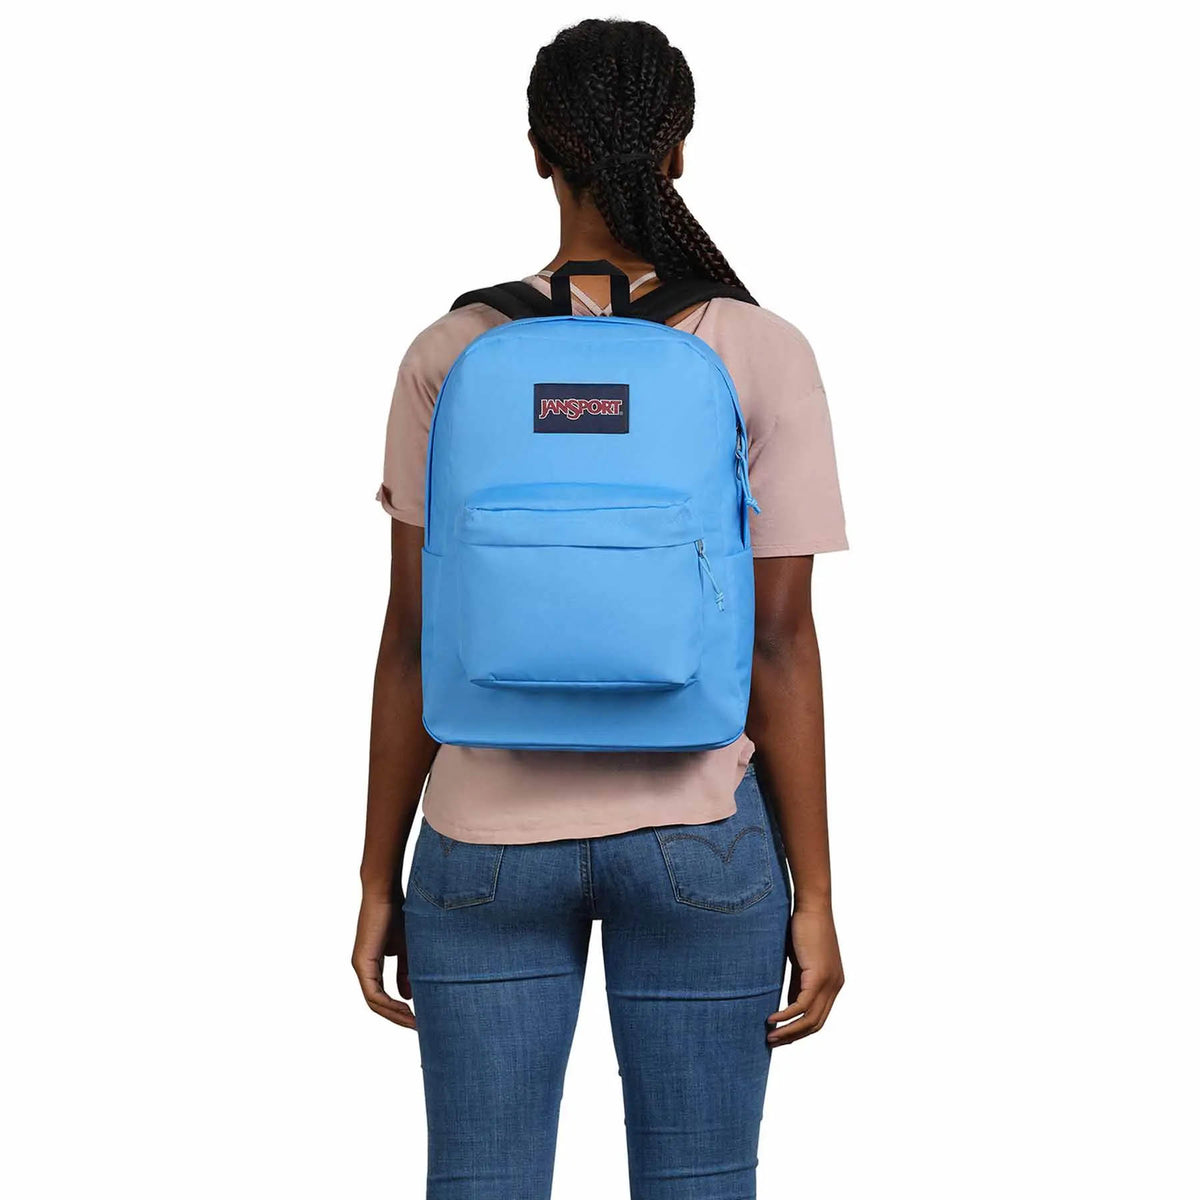 Jansport Superbreak One Backpack - Blue Neon